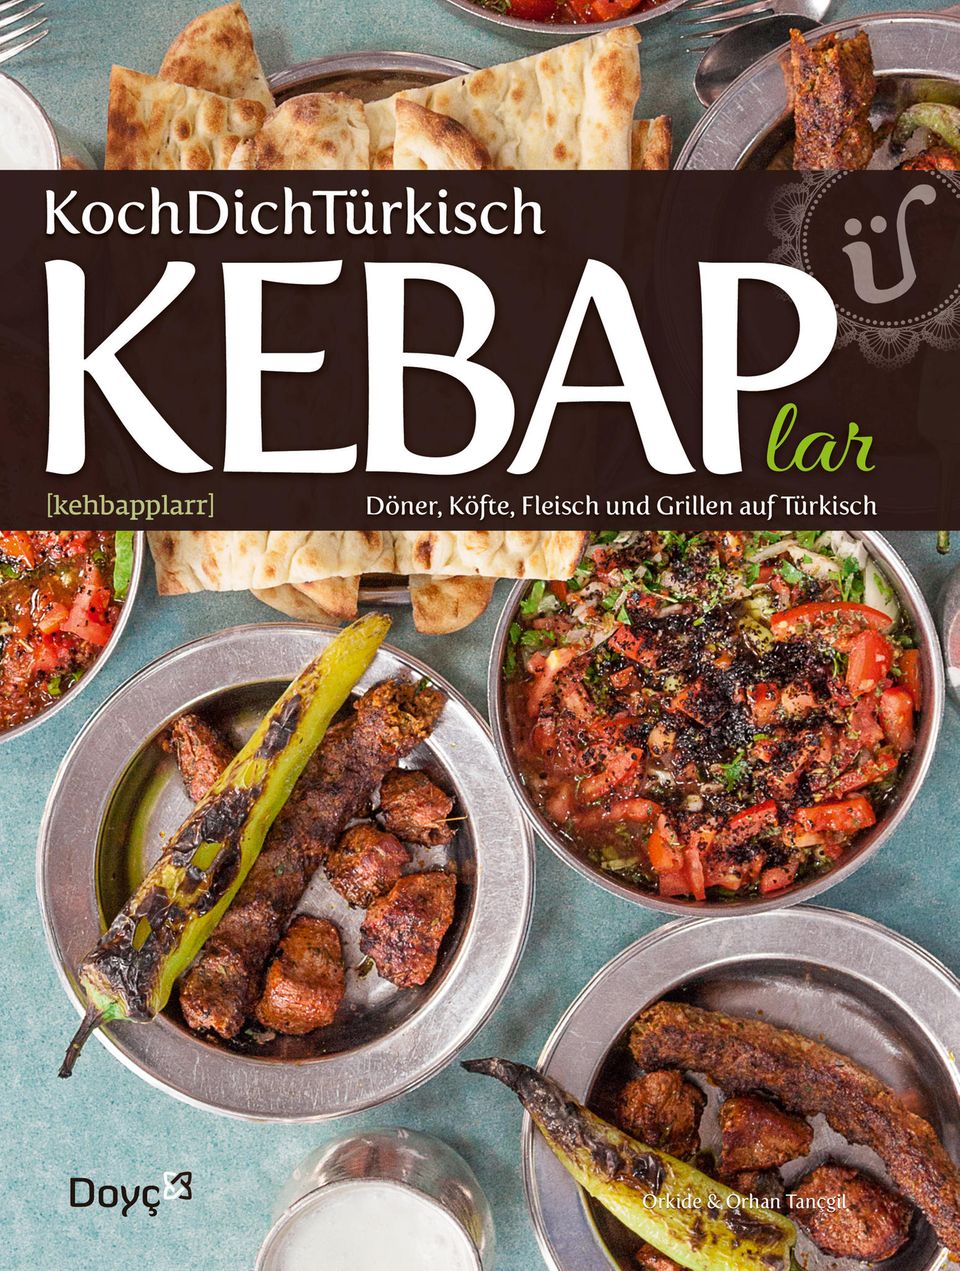 KochDichTürkisch "KEBAP lar ~ Döner, Köfte, Fleisch und Grillen auf Türkisch"